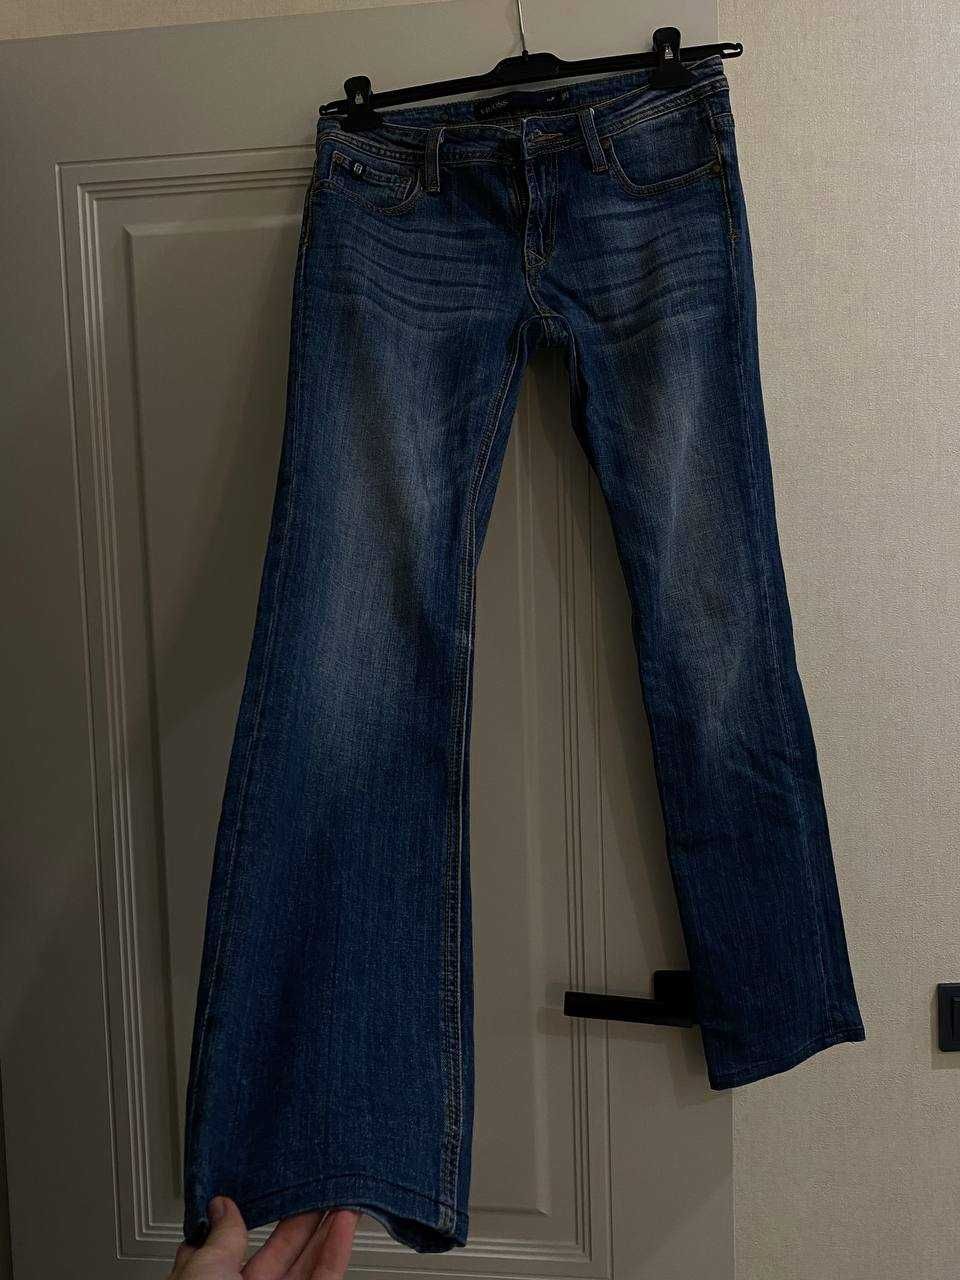 Бредовые джинсы отличного качества 38-40 размеры, цена символическая